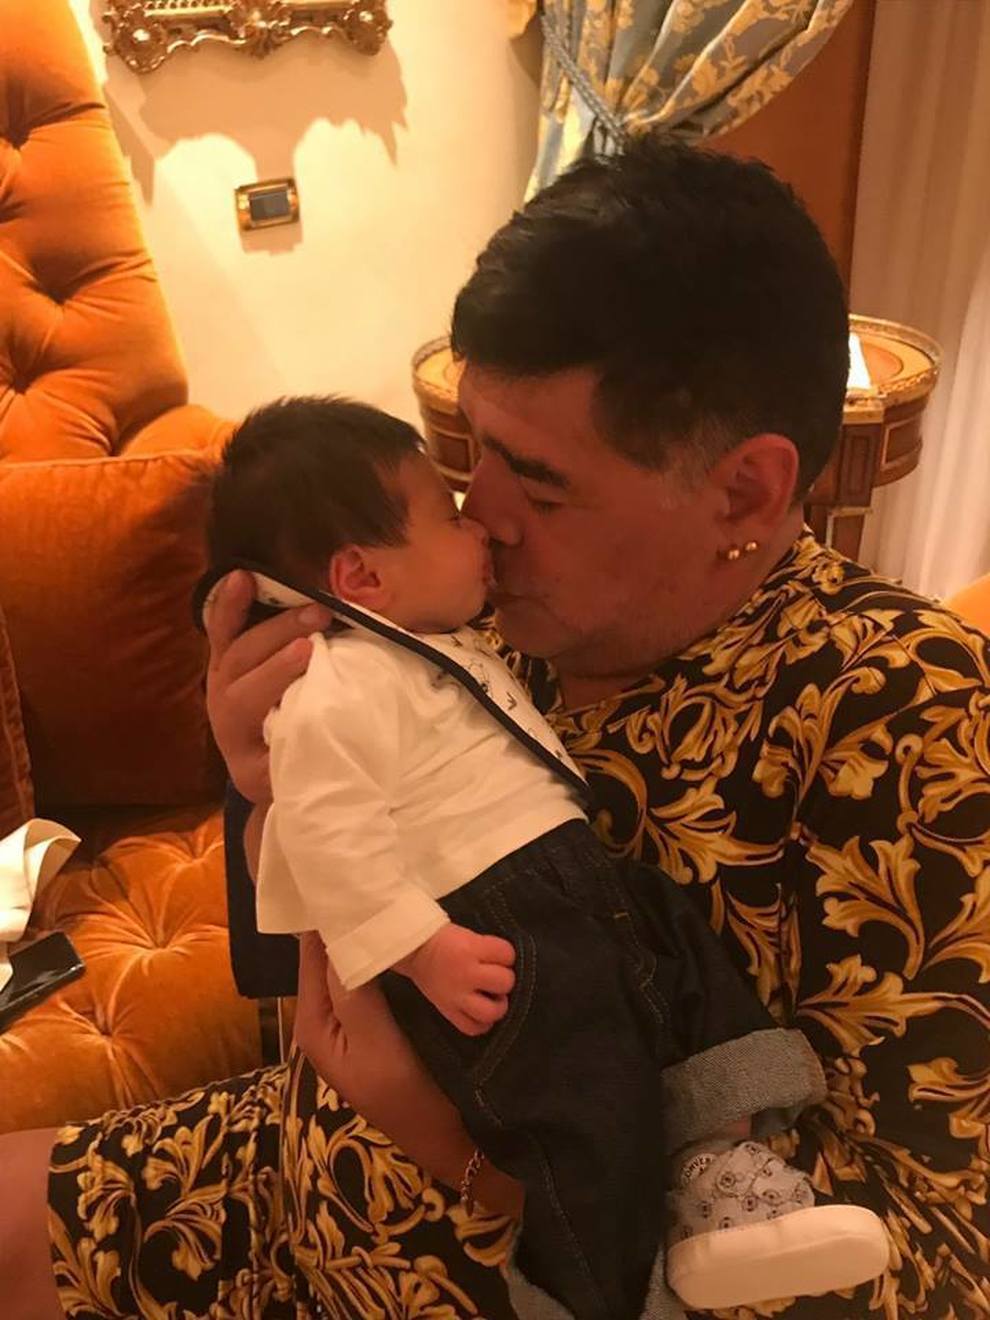 Il tenero abbraccio di Maradona a Diego Matias: le foto virali sul web